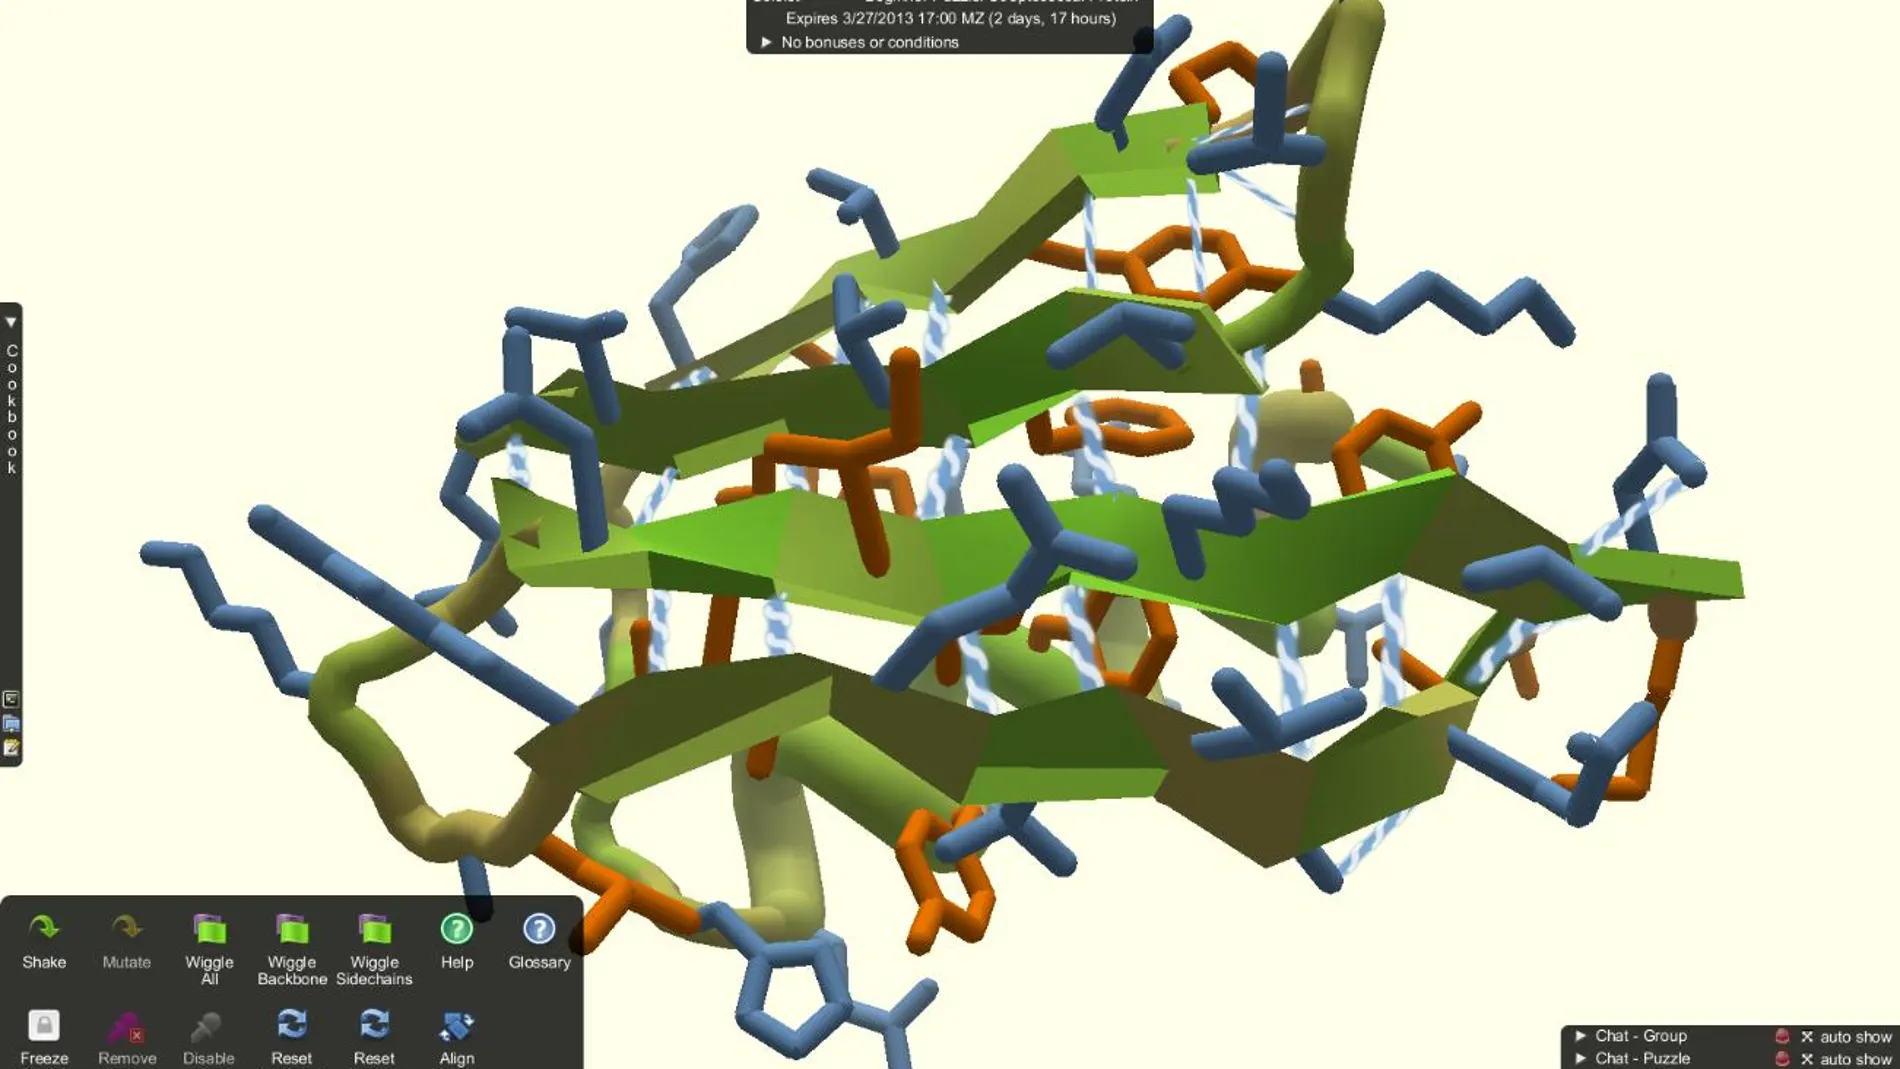 Captura del videojuego Foldit mostrando la estructura terciaria de una proteína